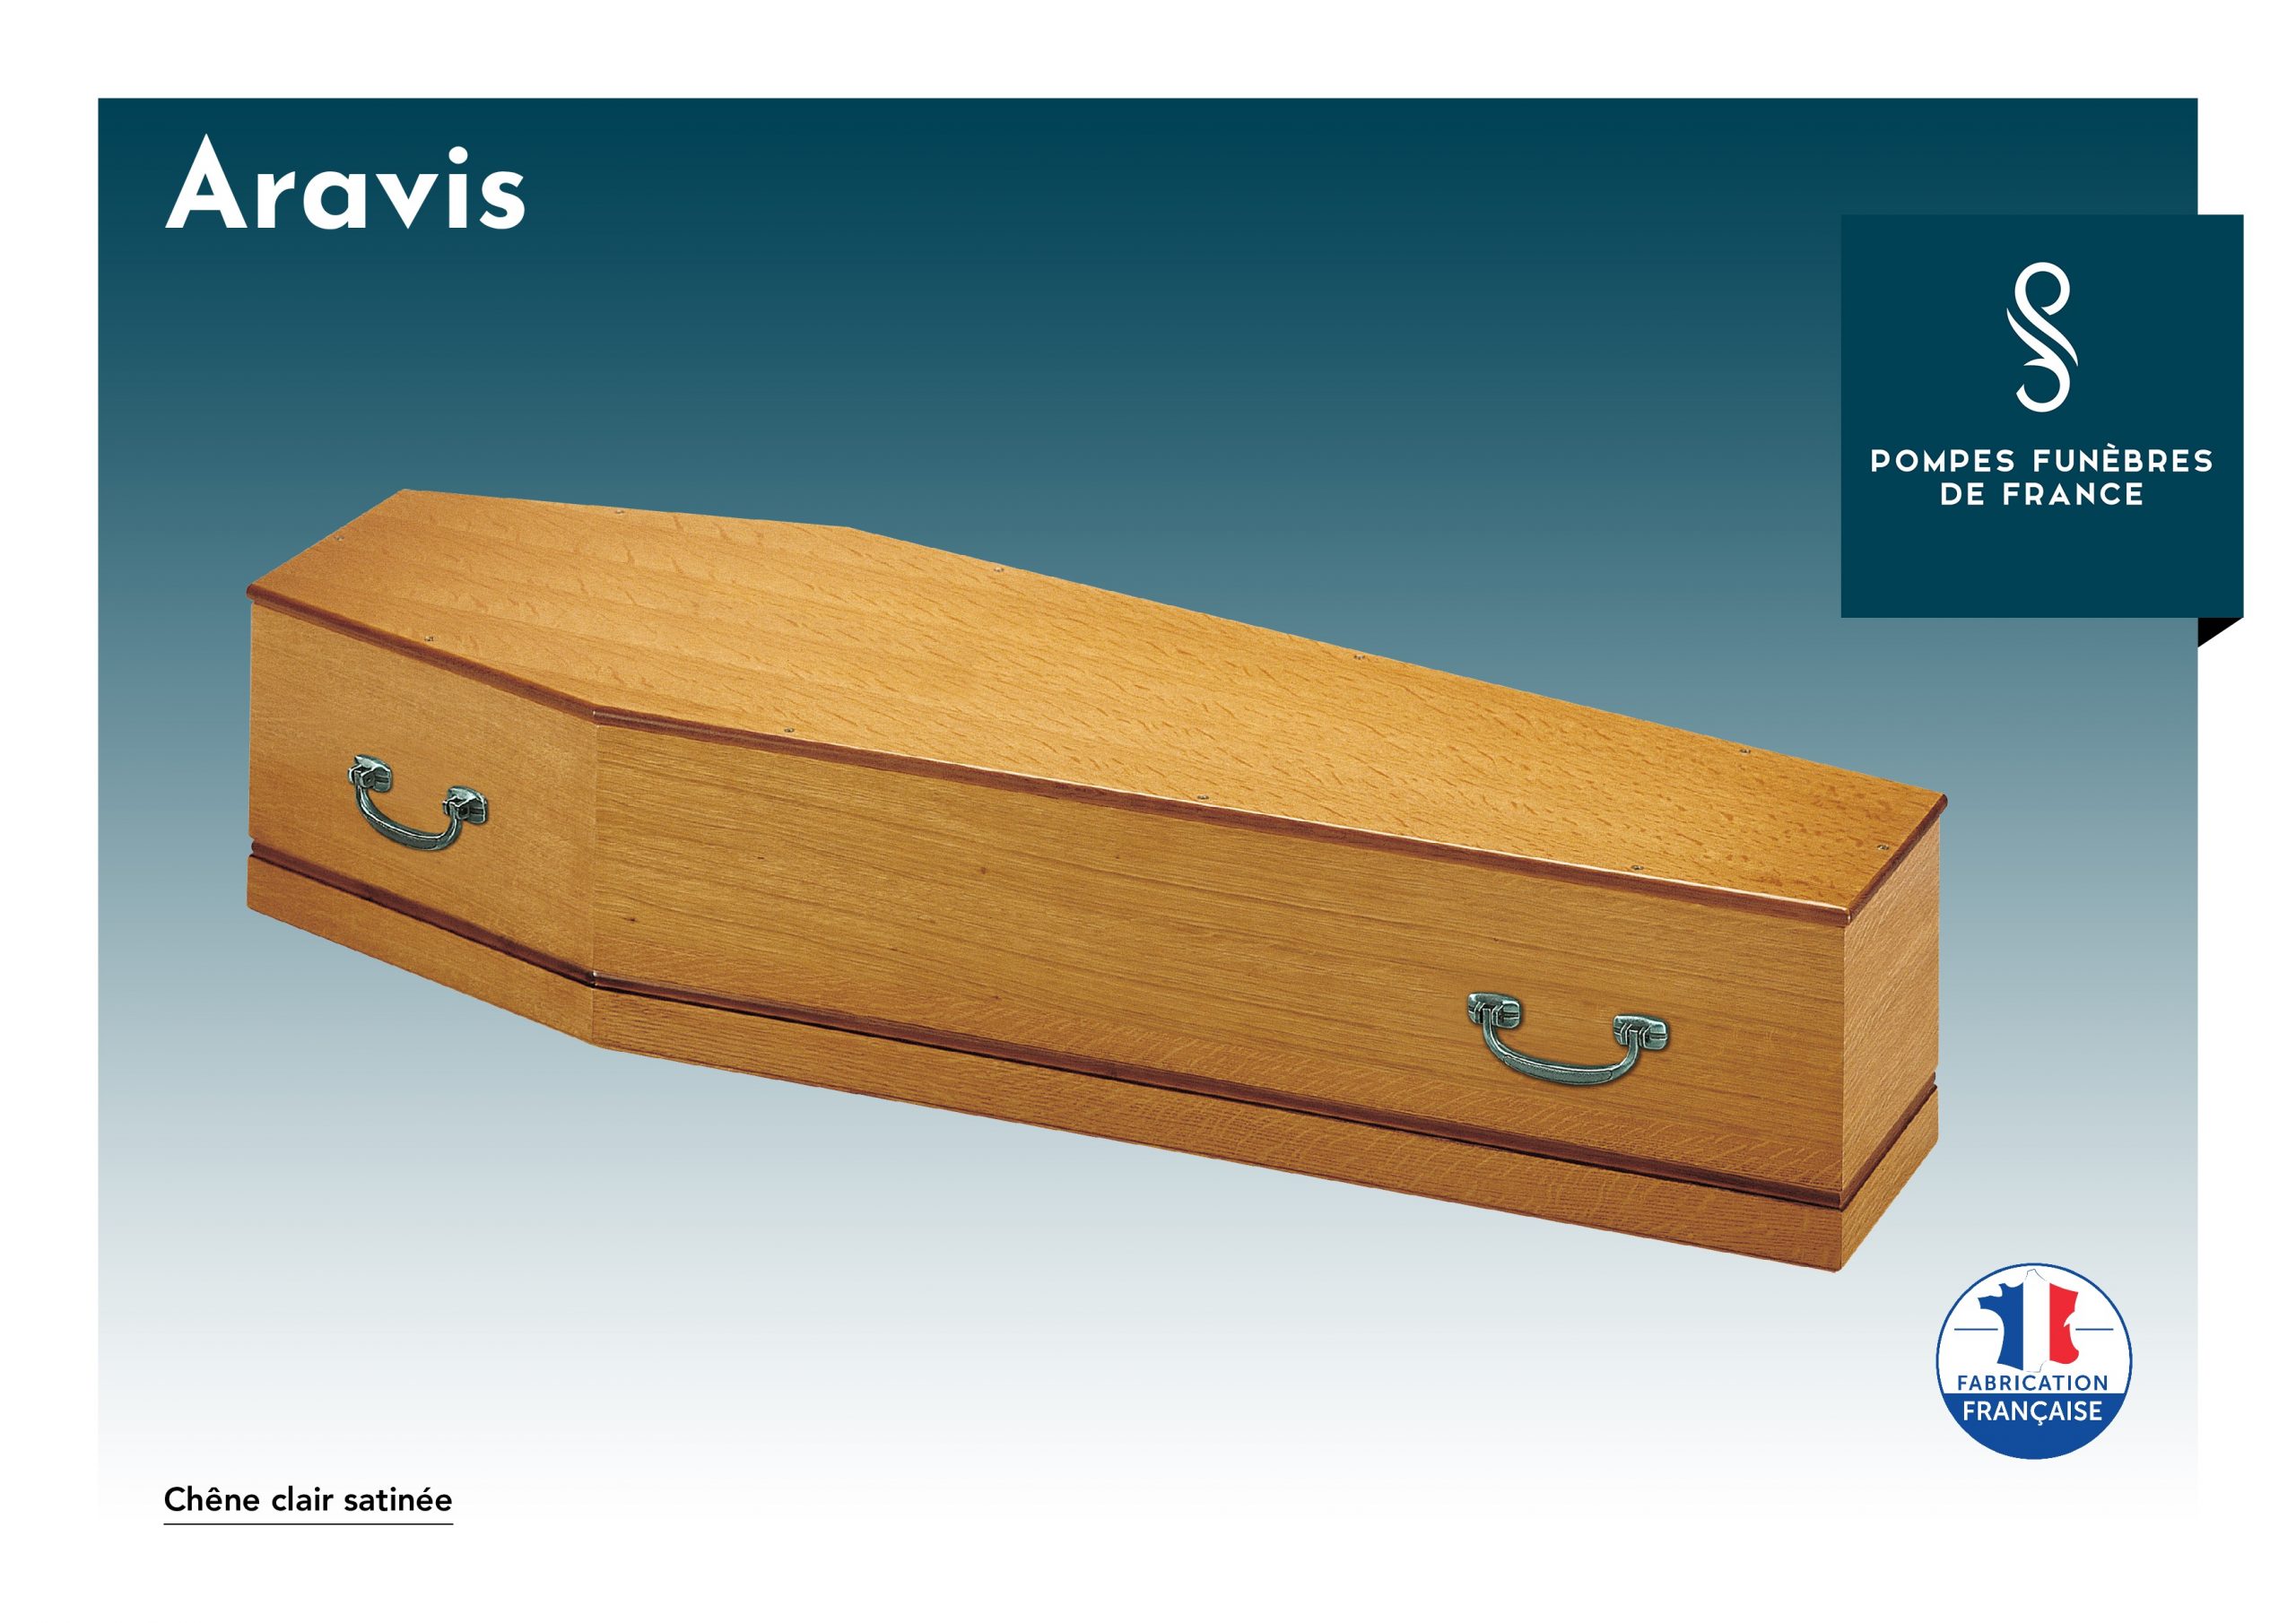 Cercueil Aravis